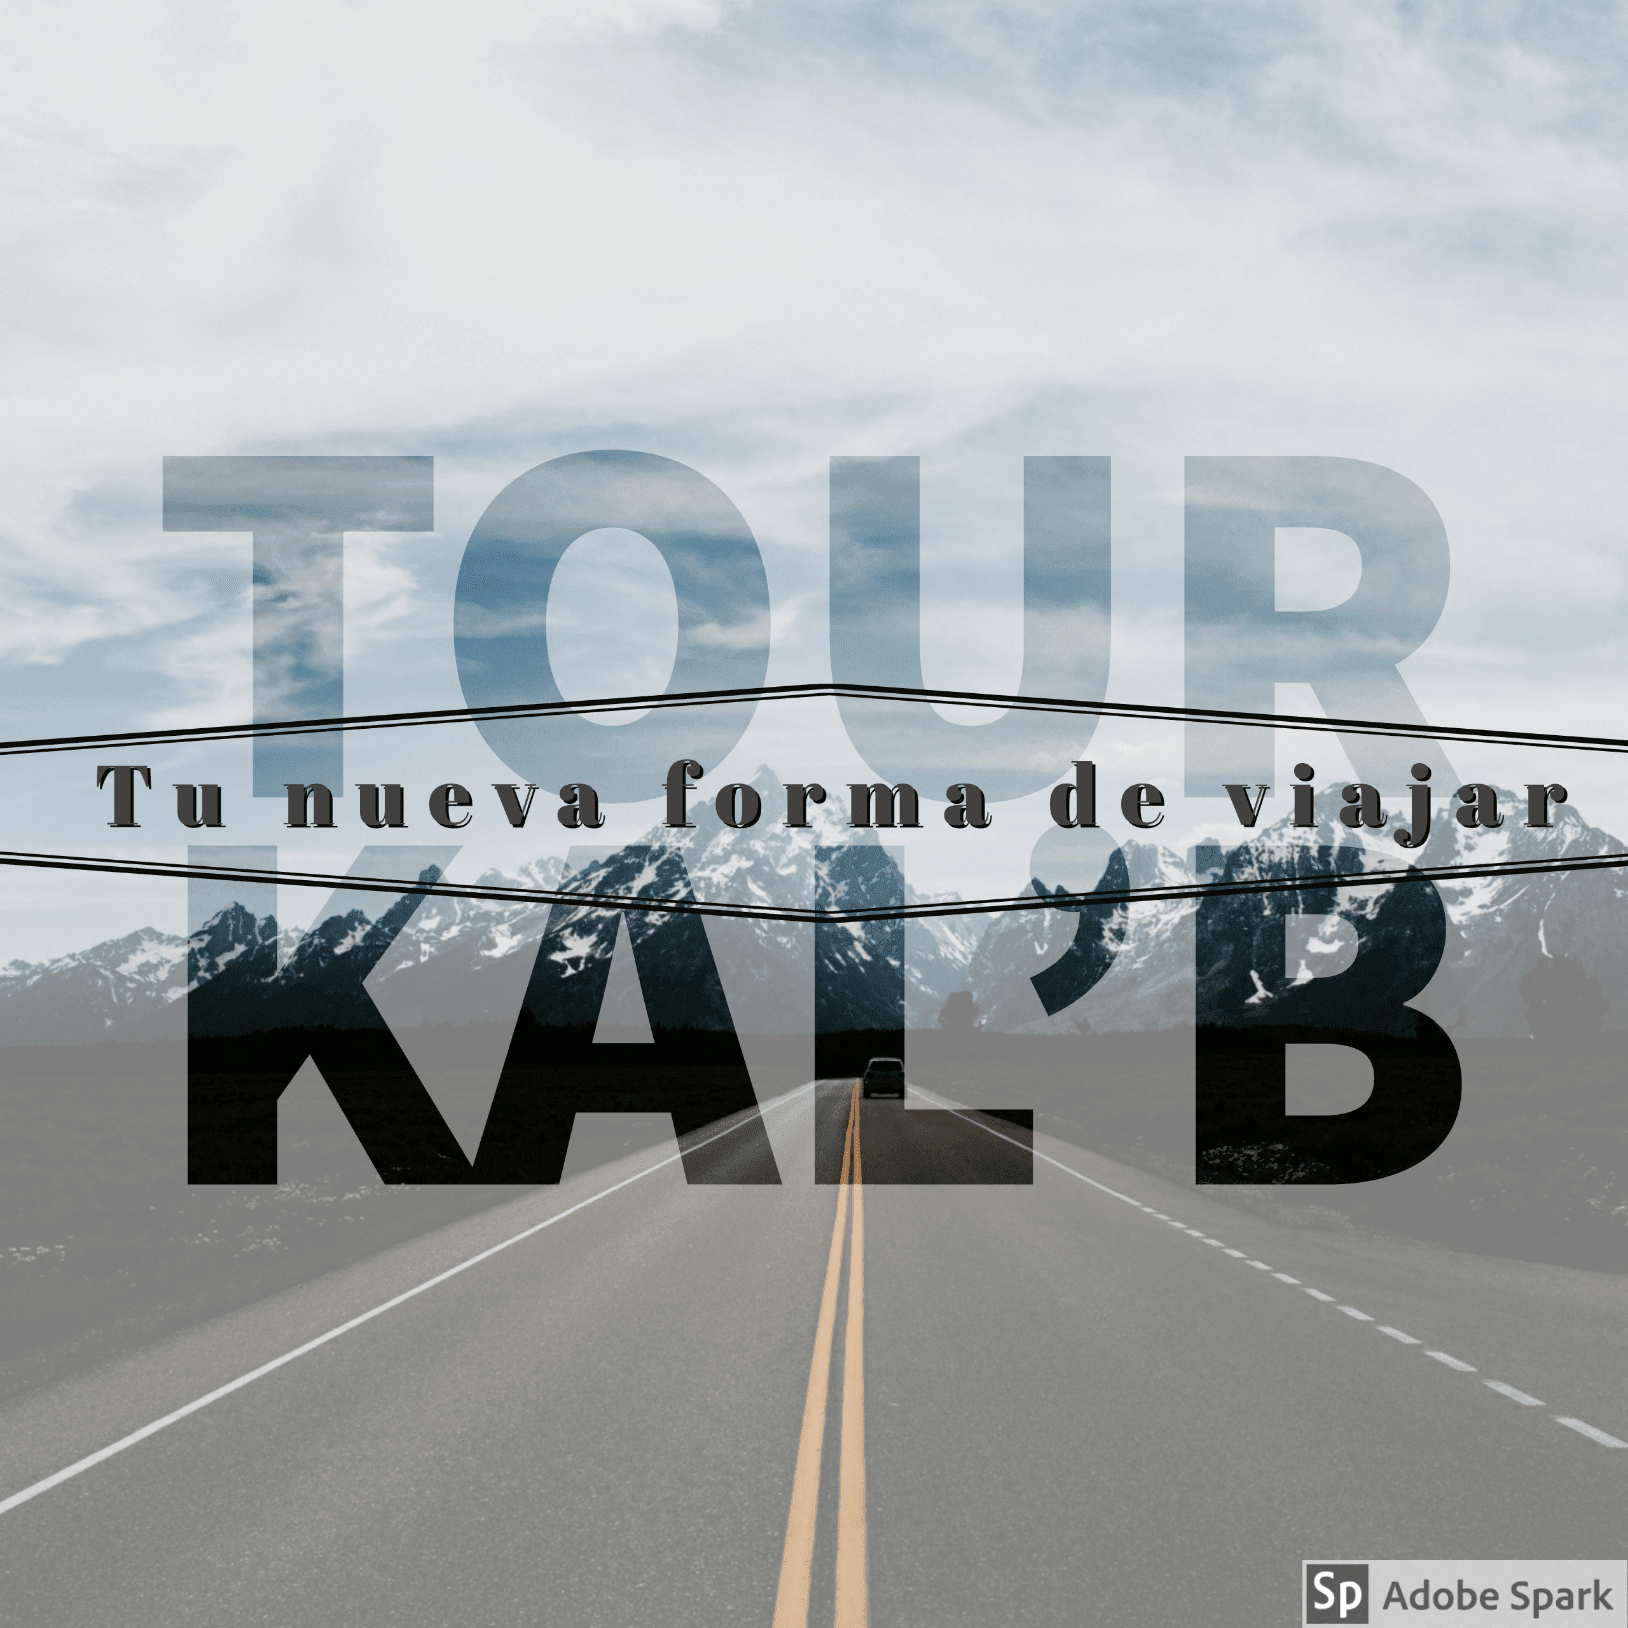 Tour Kal'b